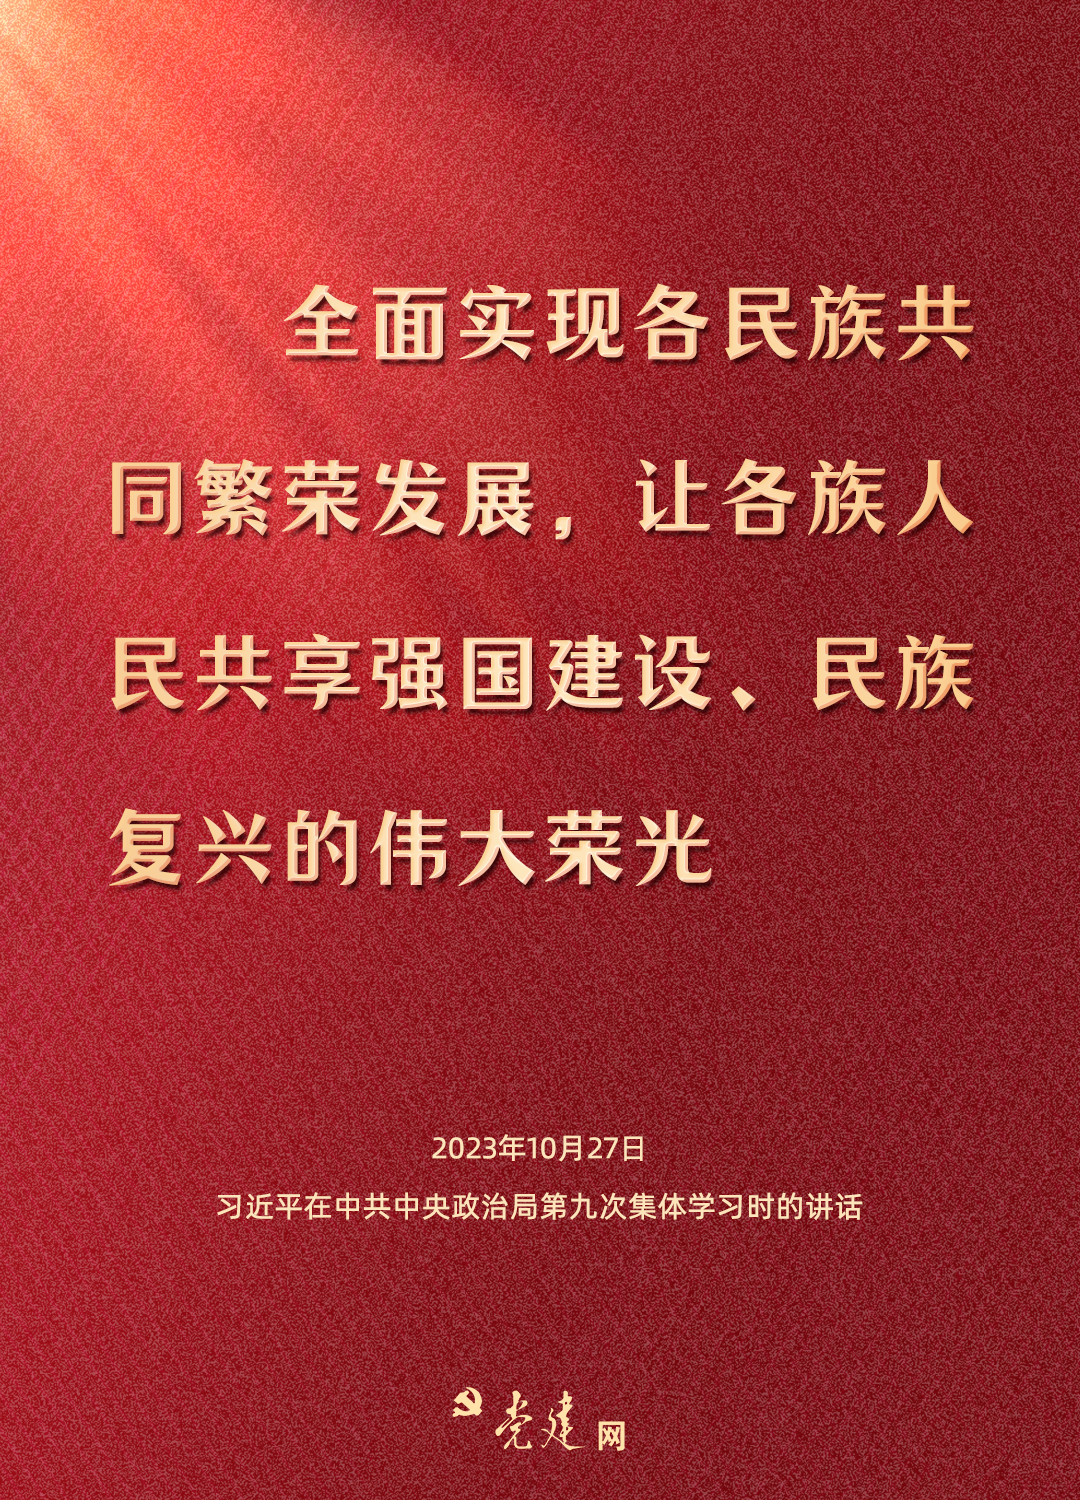 铸牢中华民族共同体意识，总书记这样强调5.png